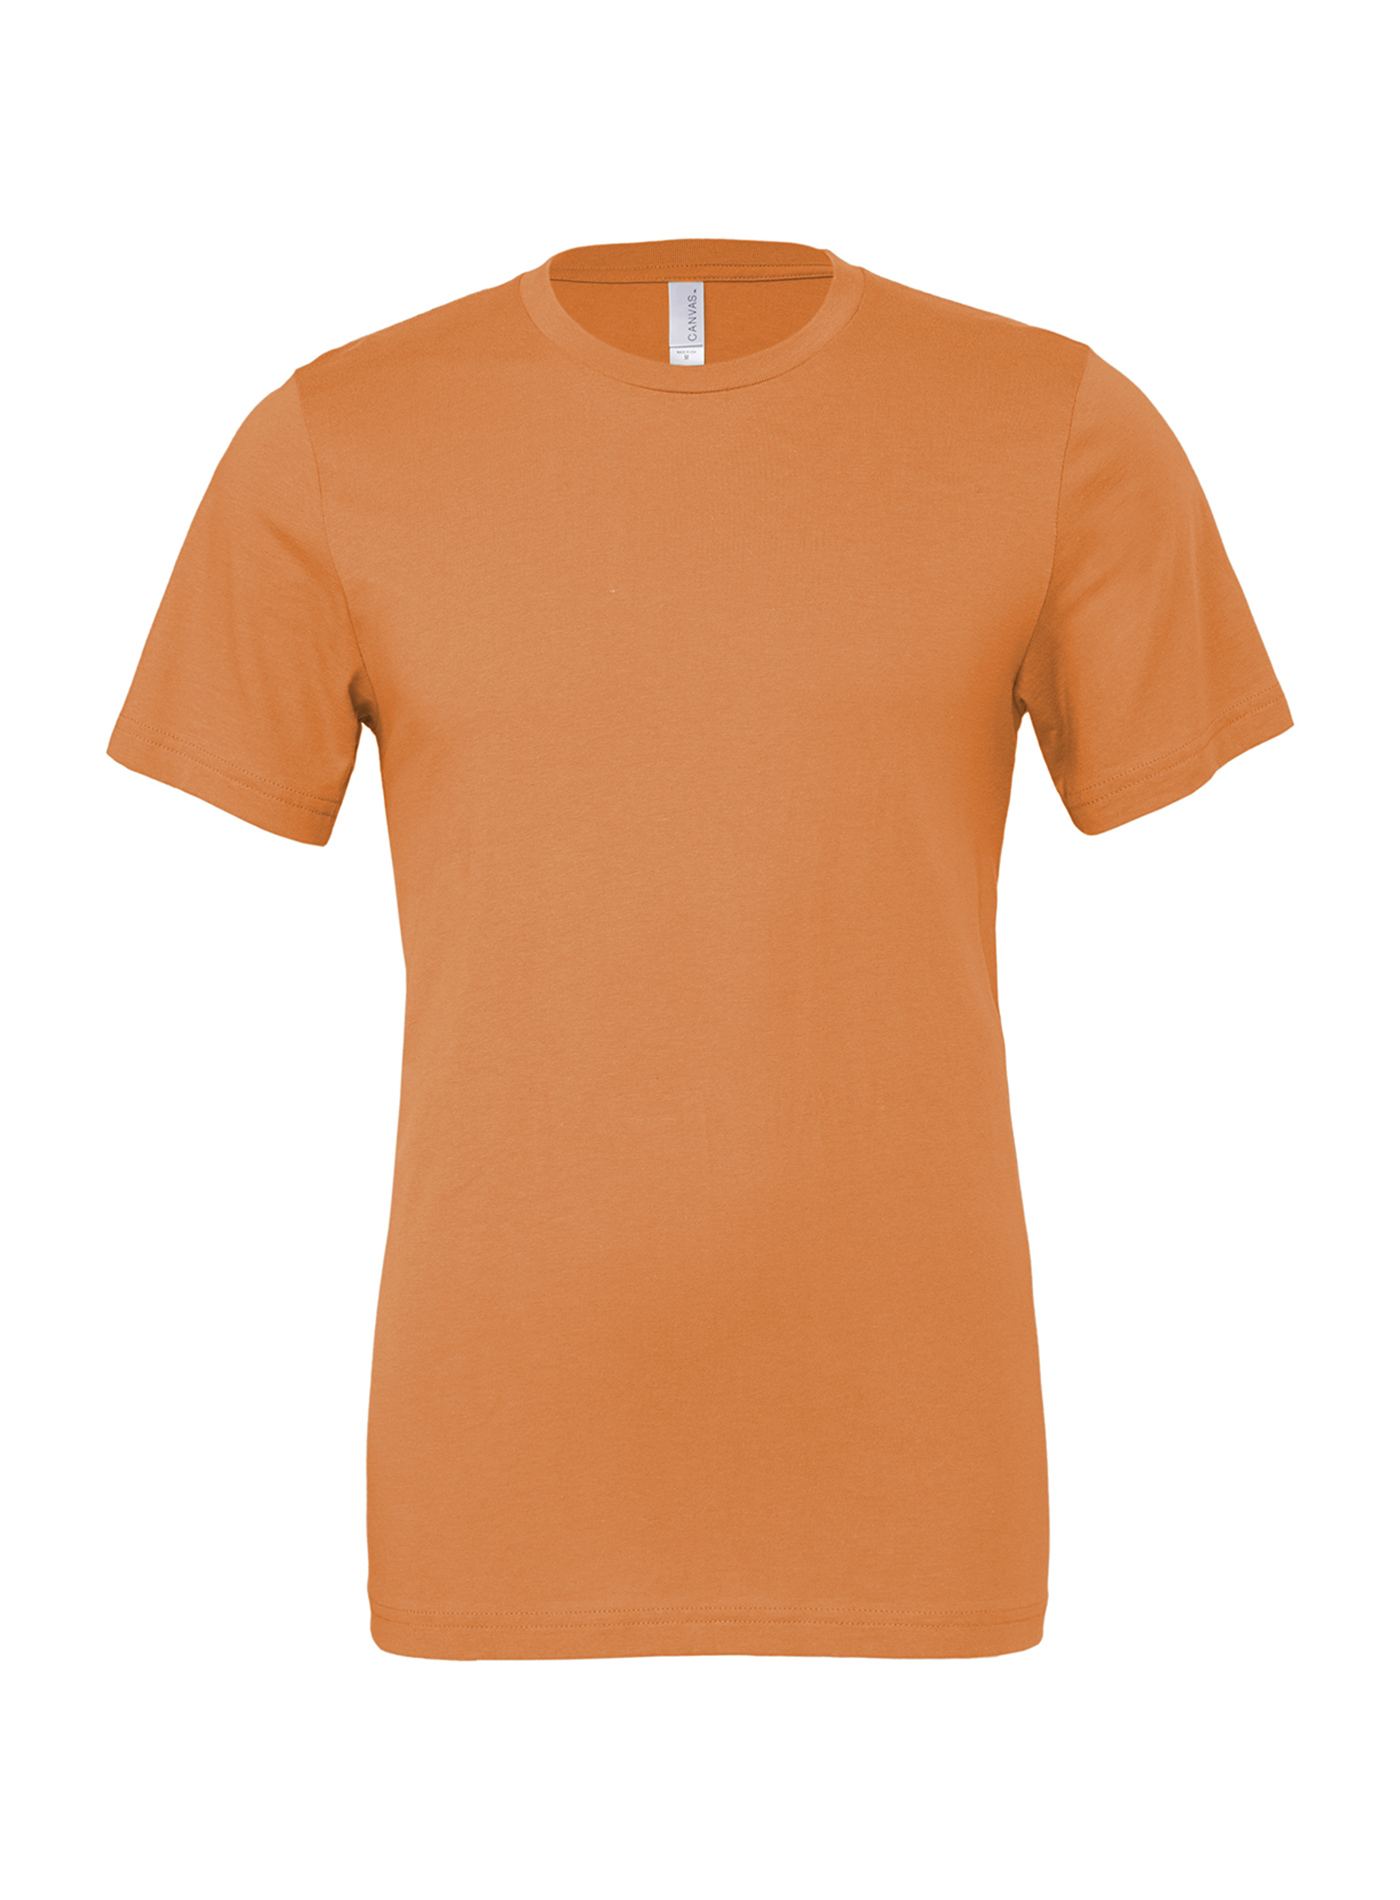 Unisex tričko Jersey - Oranžová L